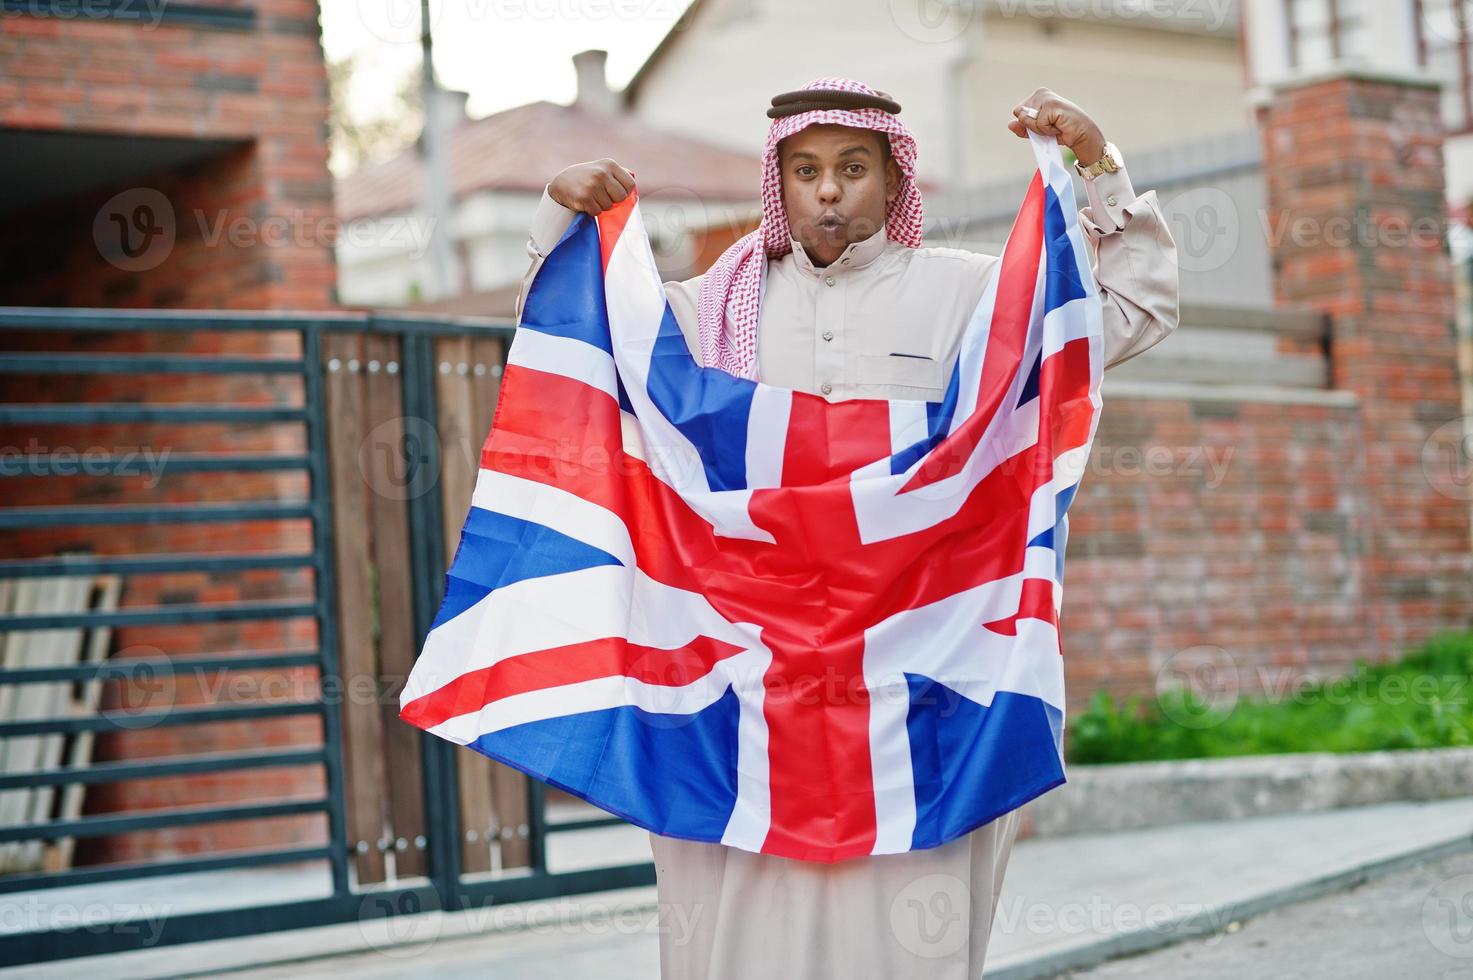 hombre árabe del medio oriente posó en la calle con la bandera de gran bretaña. concepto de inglaterra y países árabes. foto